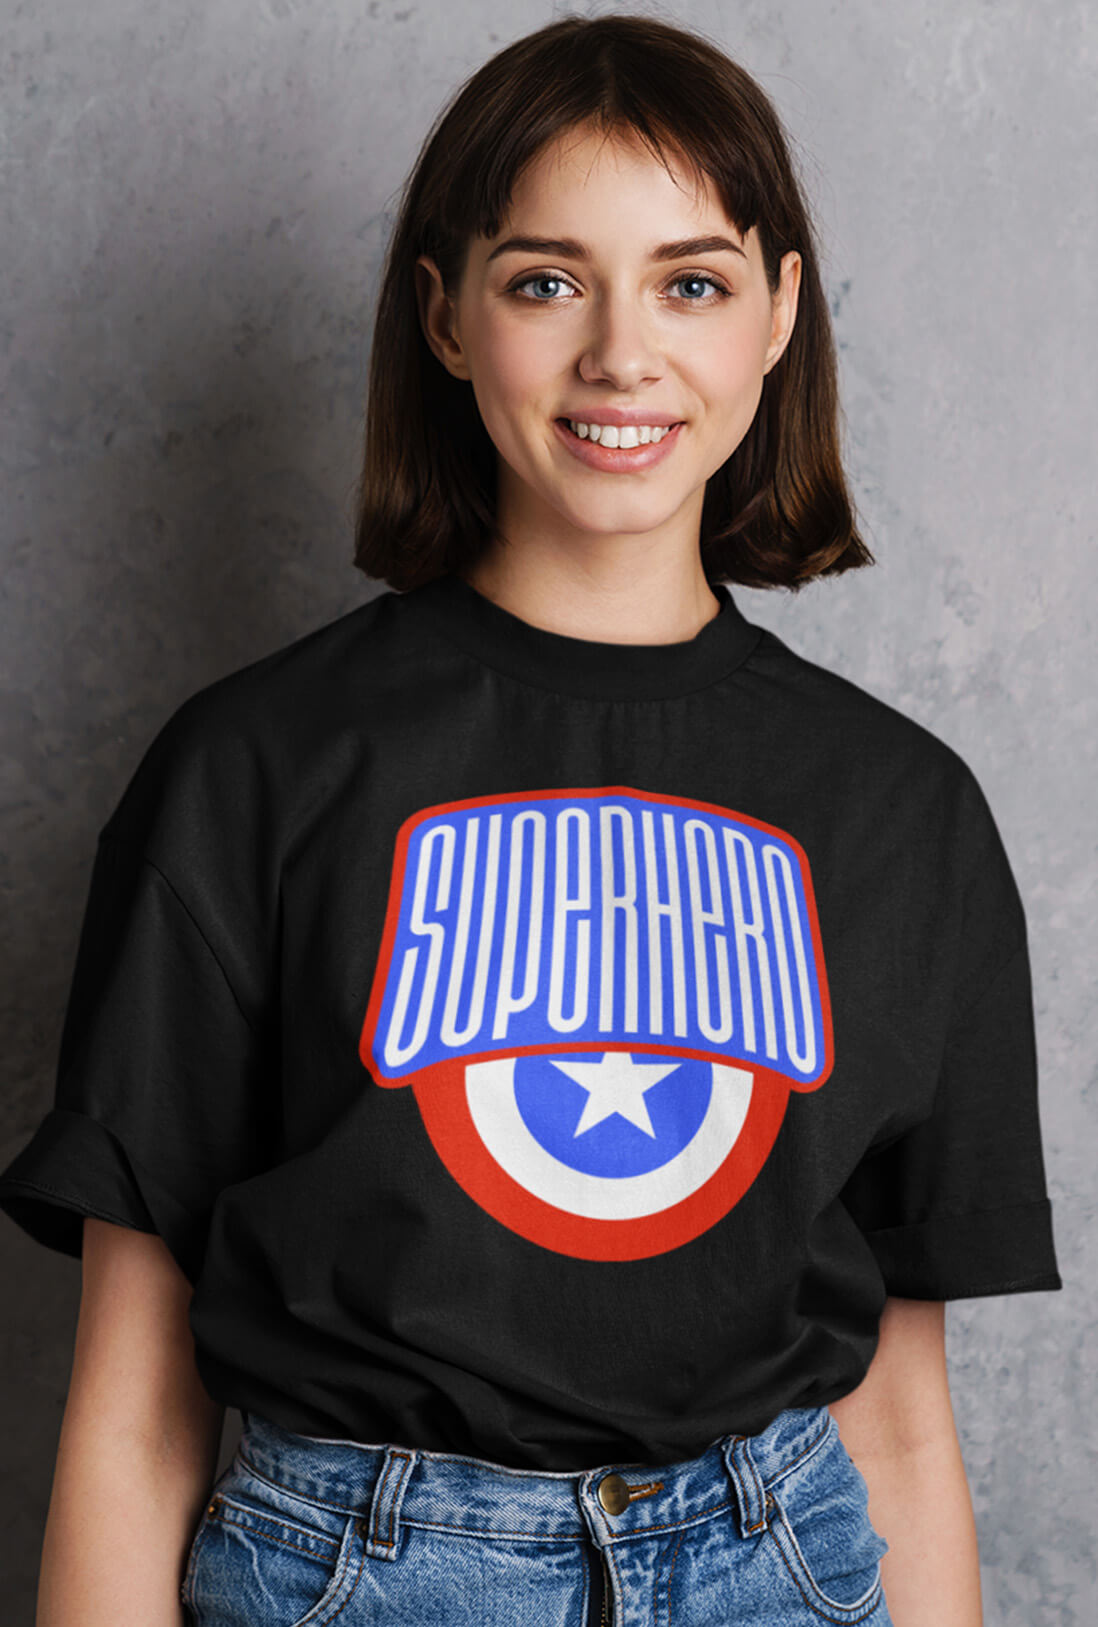 Superhero Women's Oversized T-Shirt